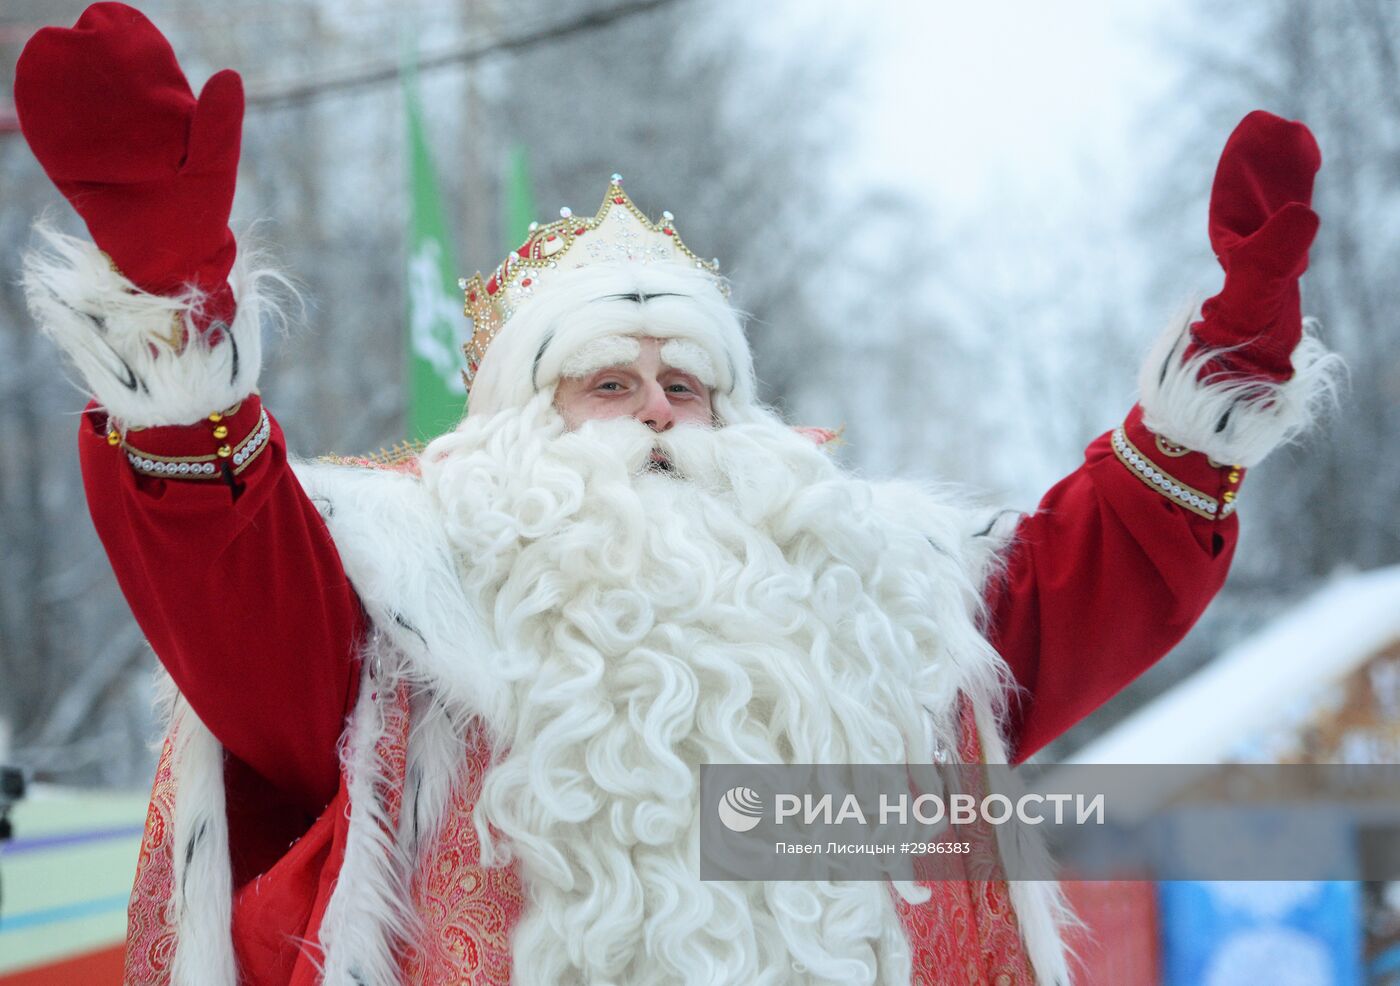 Дед Мороз из Великого Устюга посетил Екатеринбург